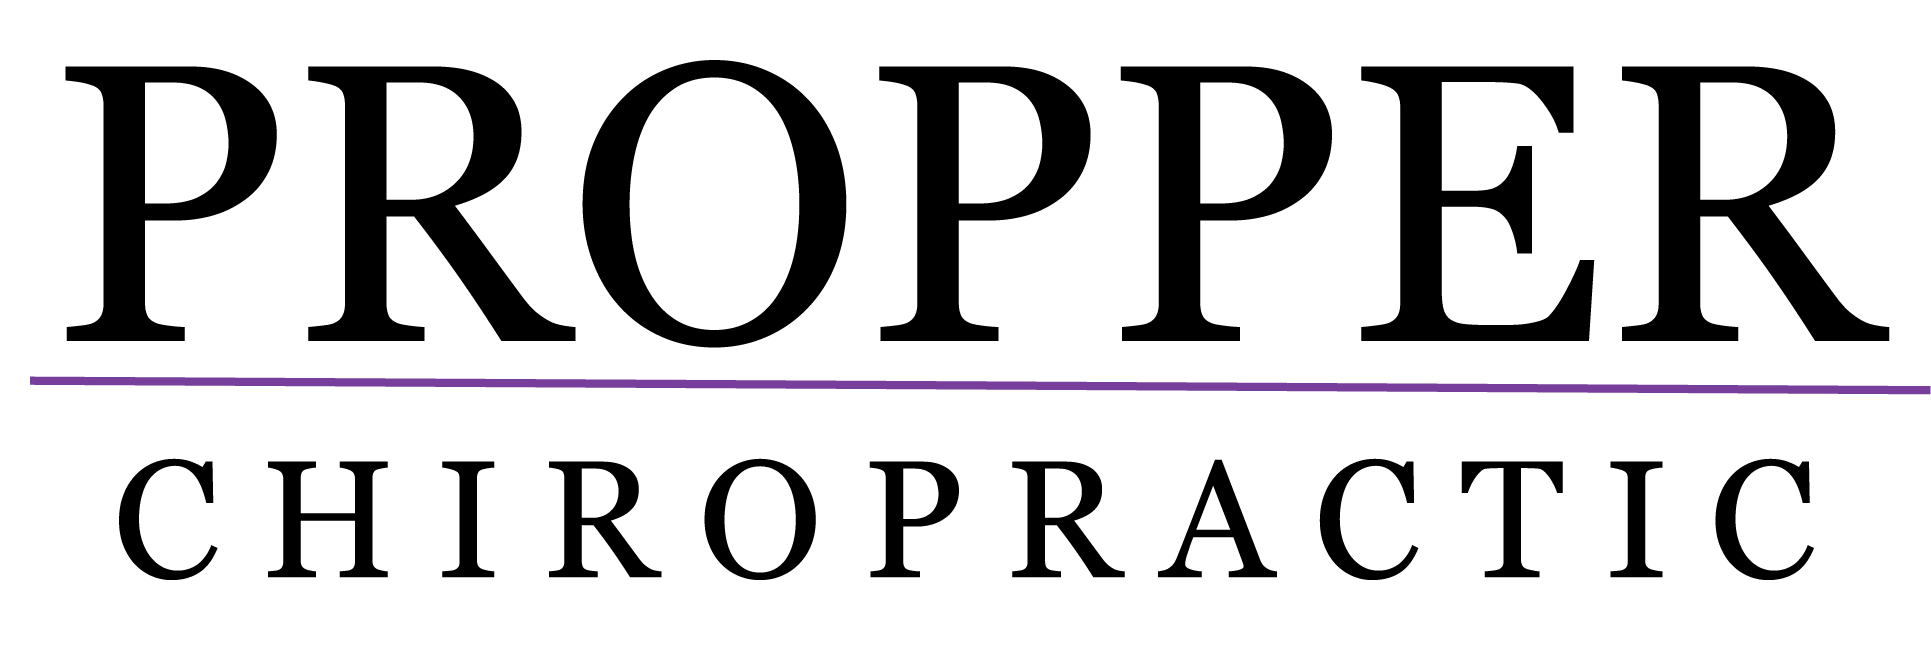 Propper Logo - Propper Chiropractic LLC - Chiropractor in Westport, CT US Propper ...